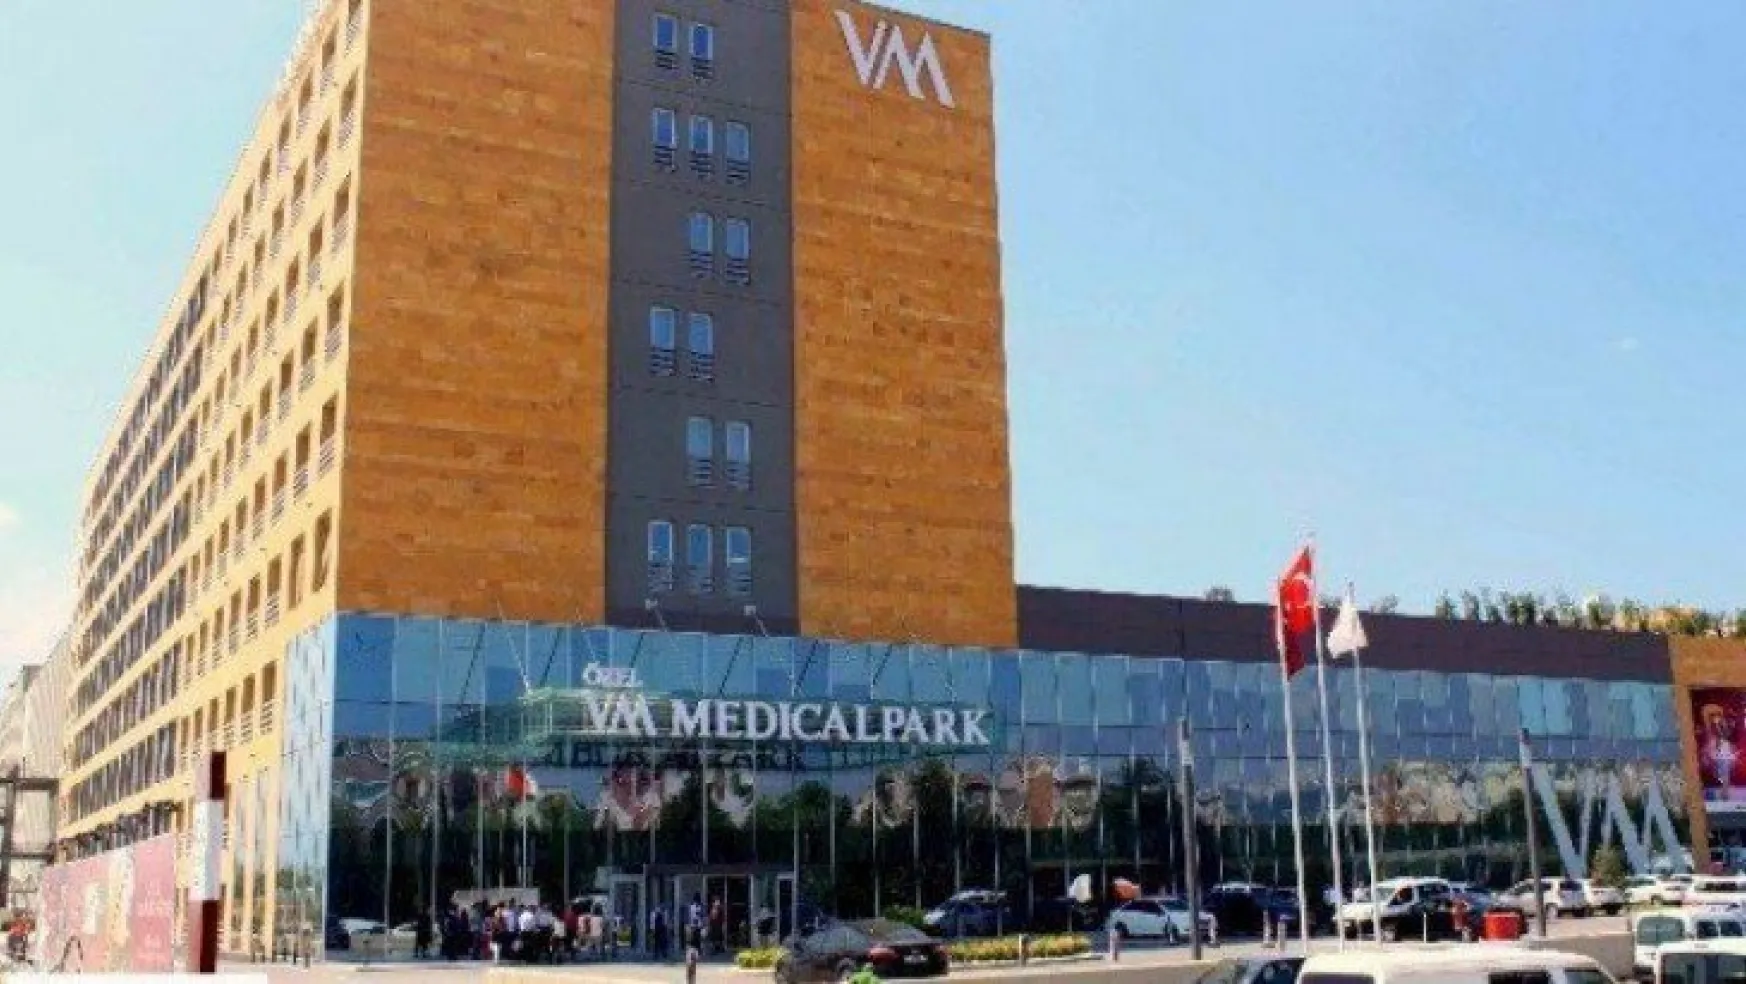 İzmit VM Medical Park Hastanesi'ne inceleme başlatıldı!